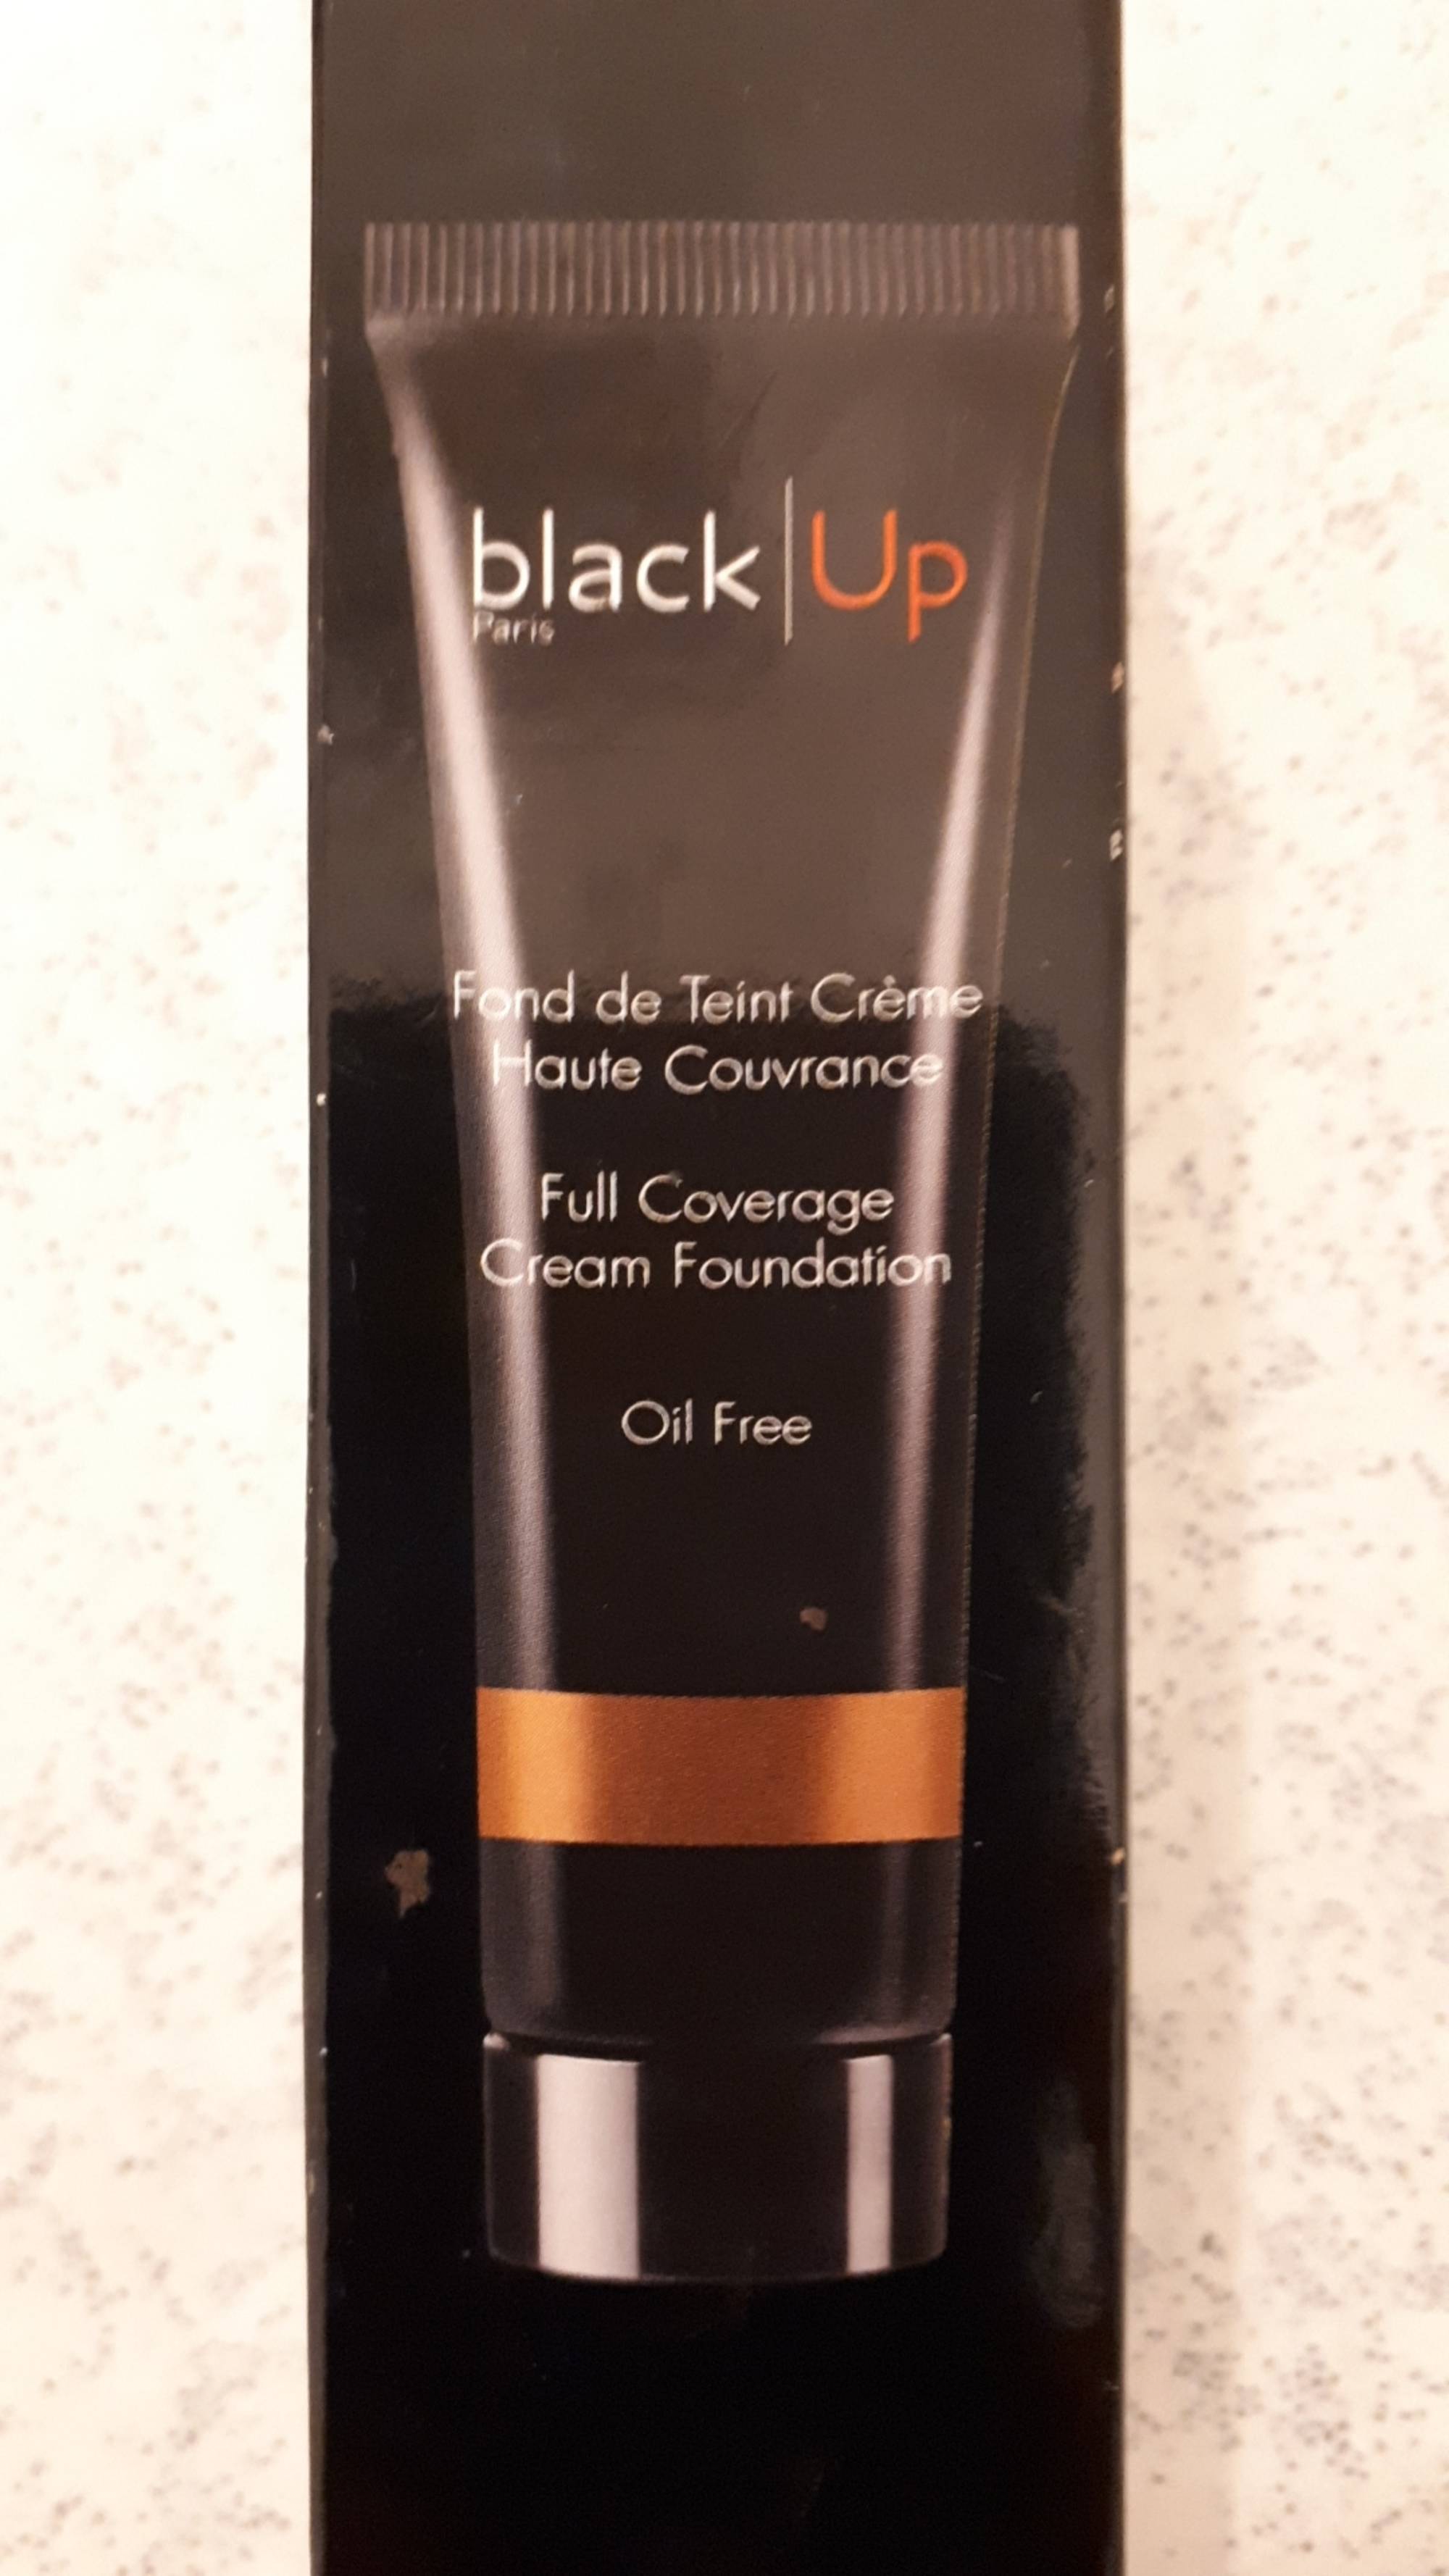 BLACK UP - Fond de teint crème haute couvrance